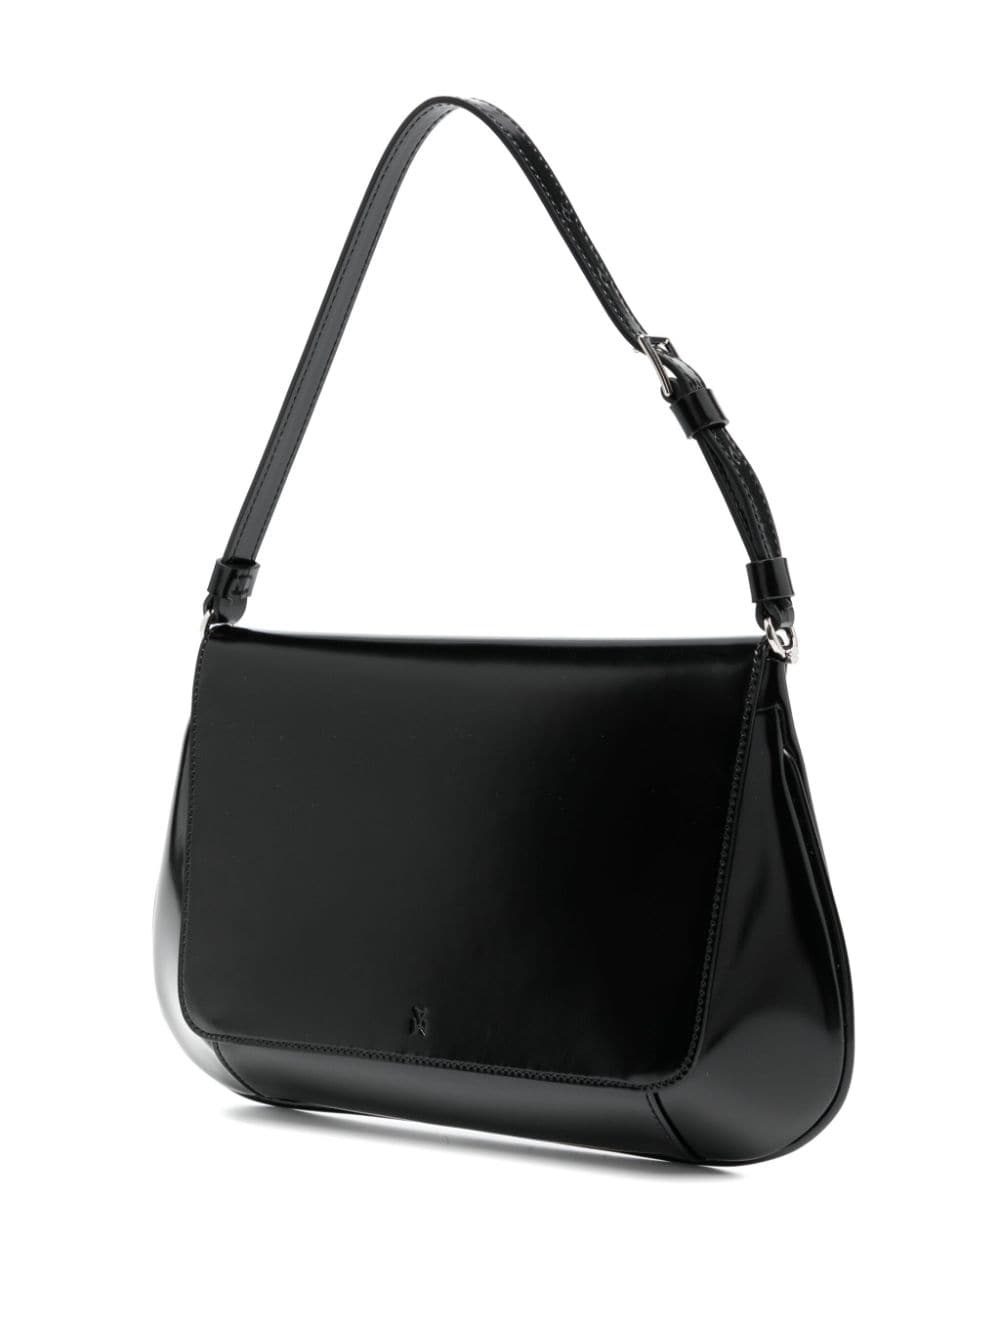 Ami leather shoulder bag - 3